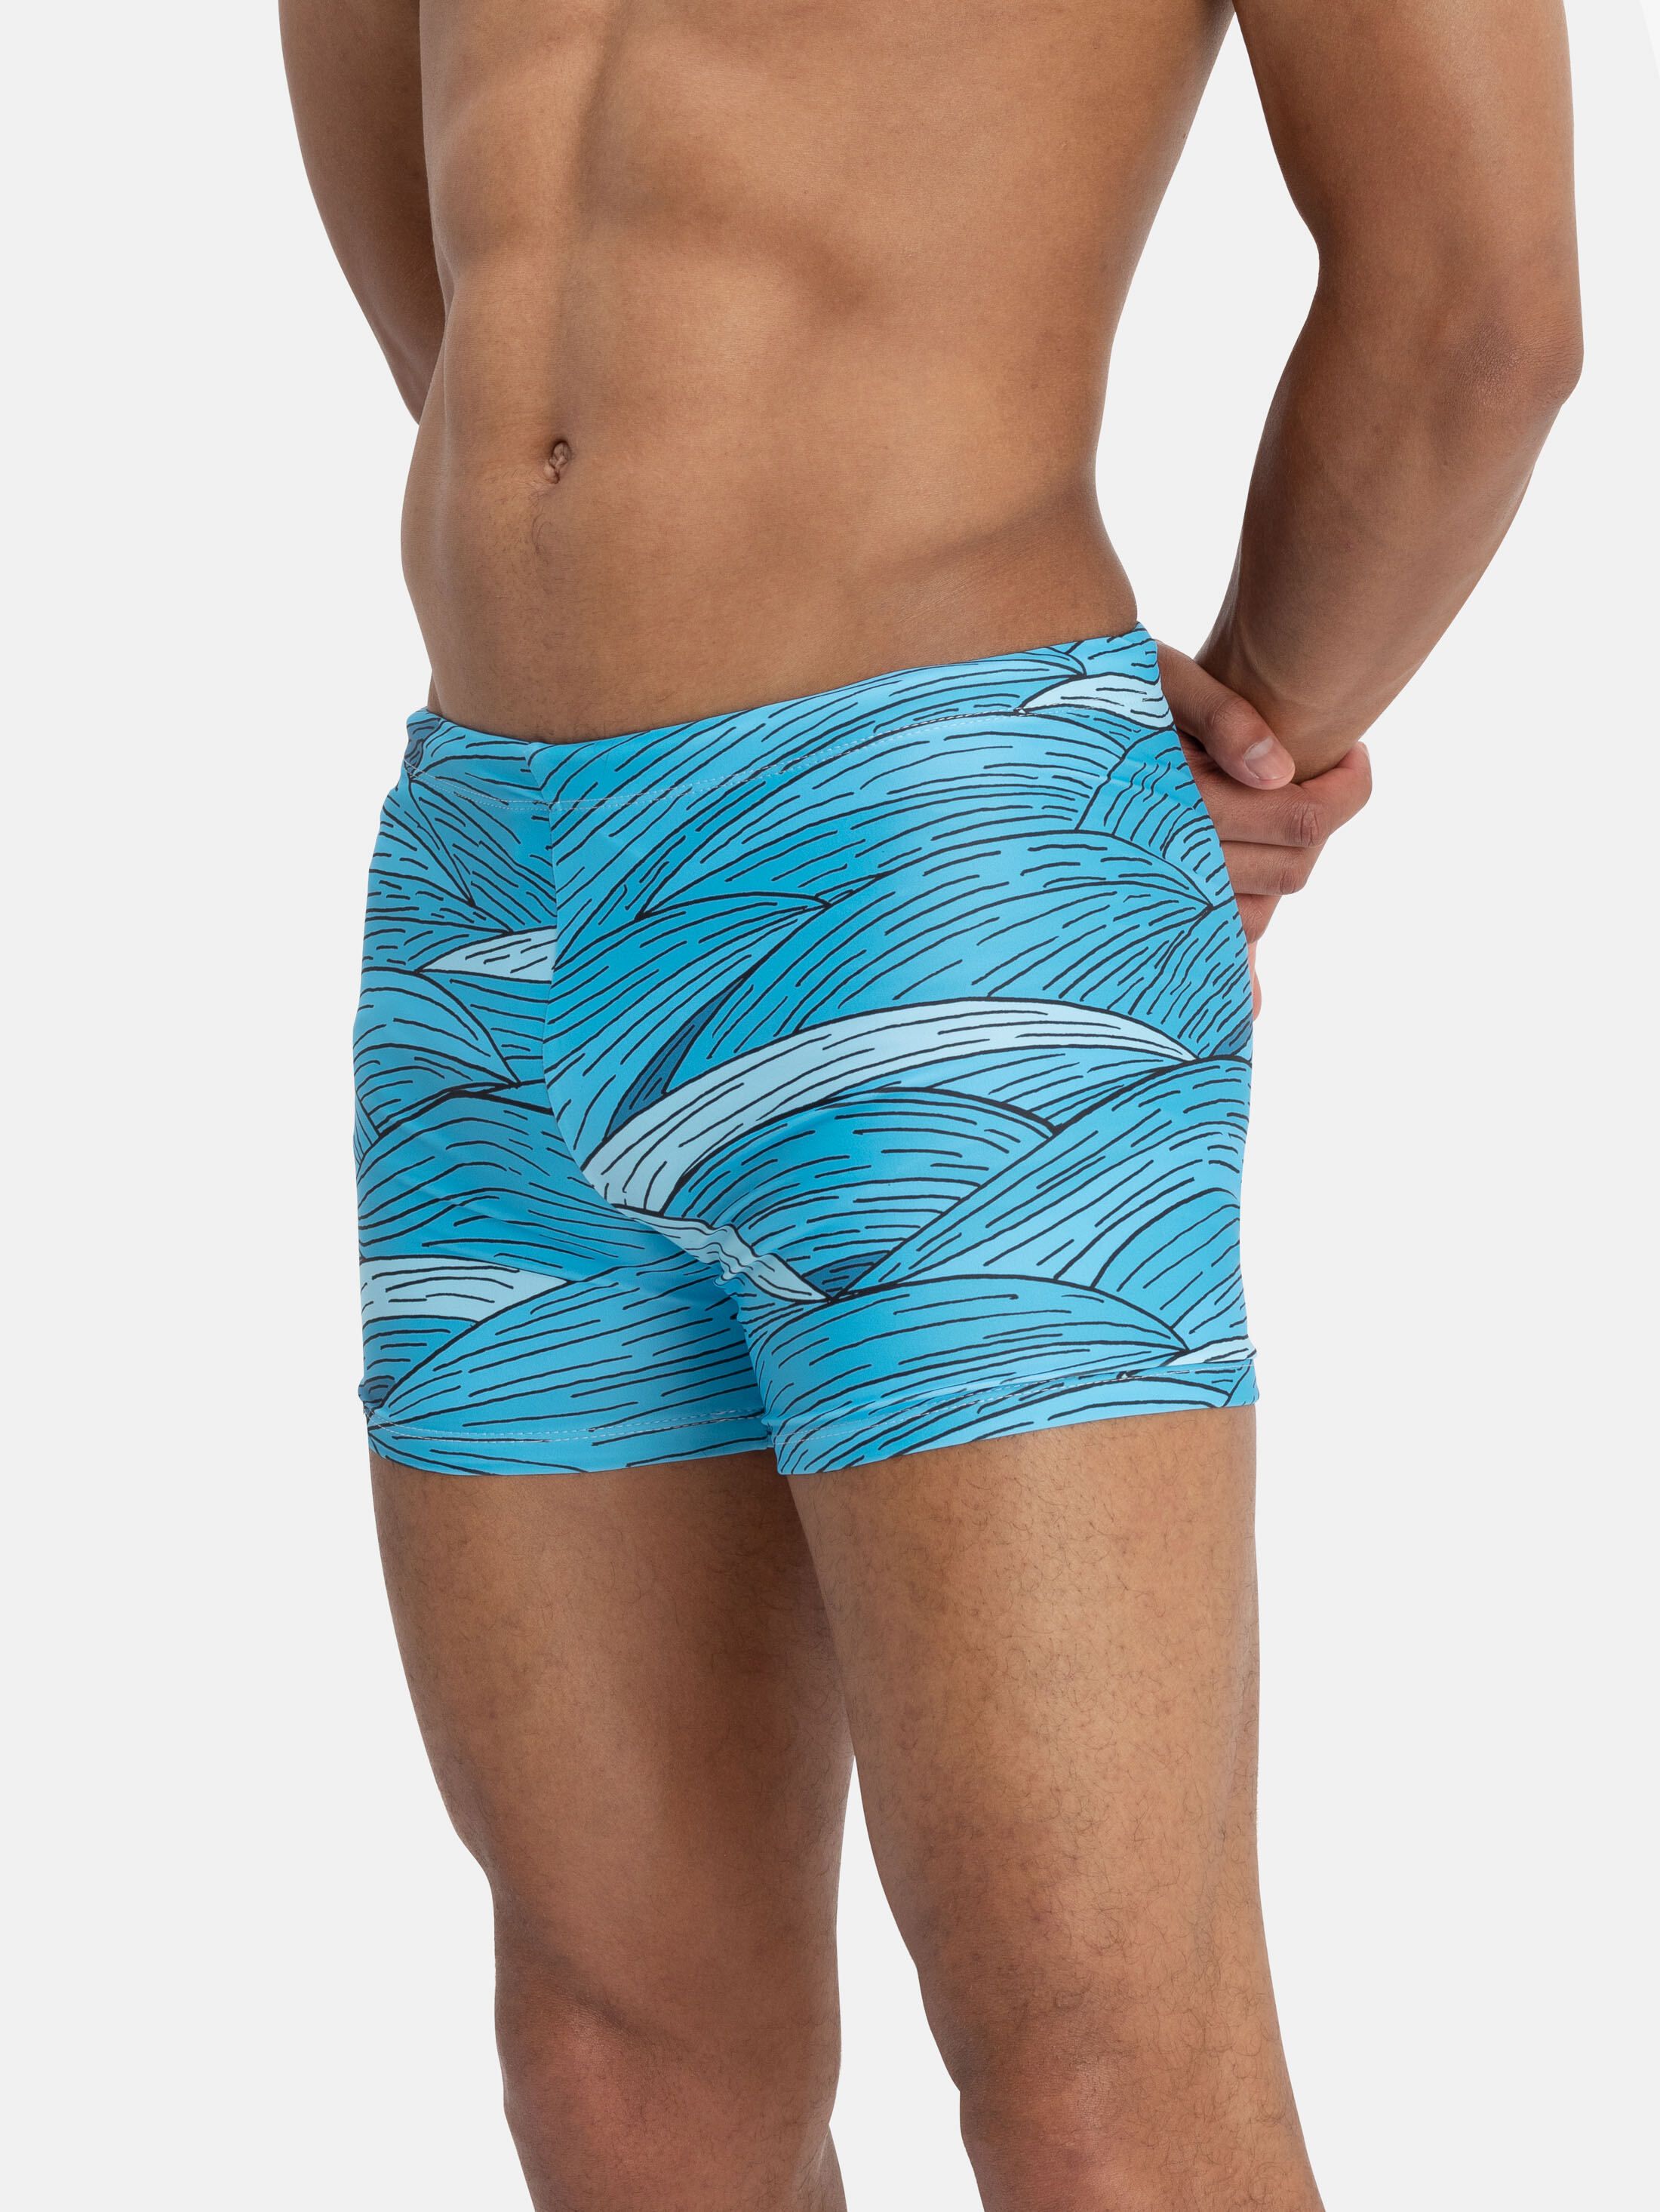 custom swimming trunks detail